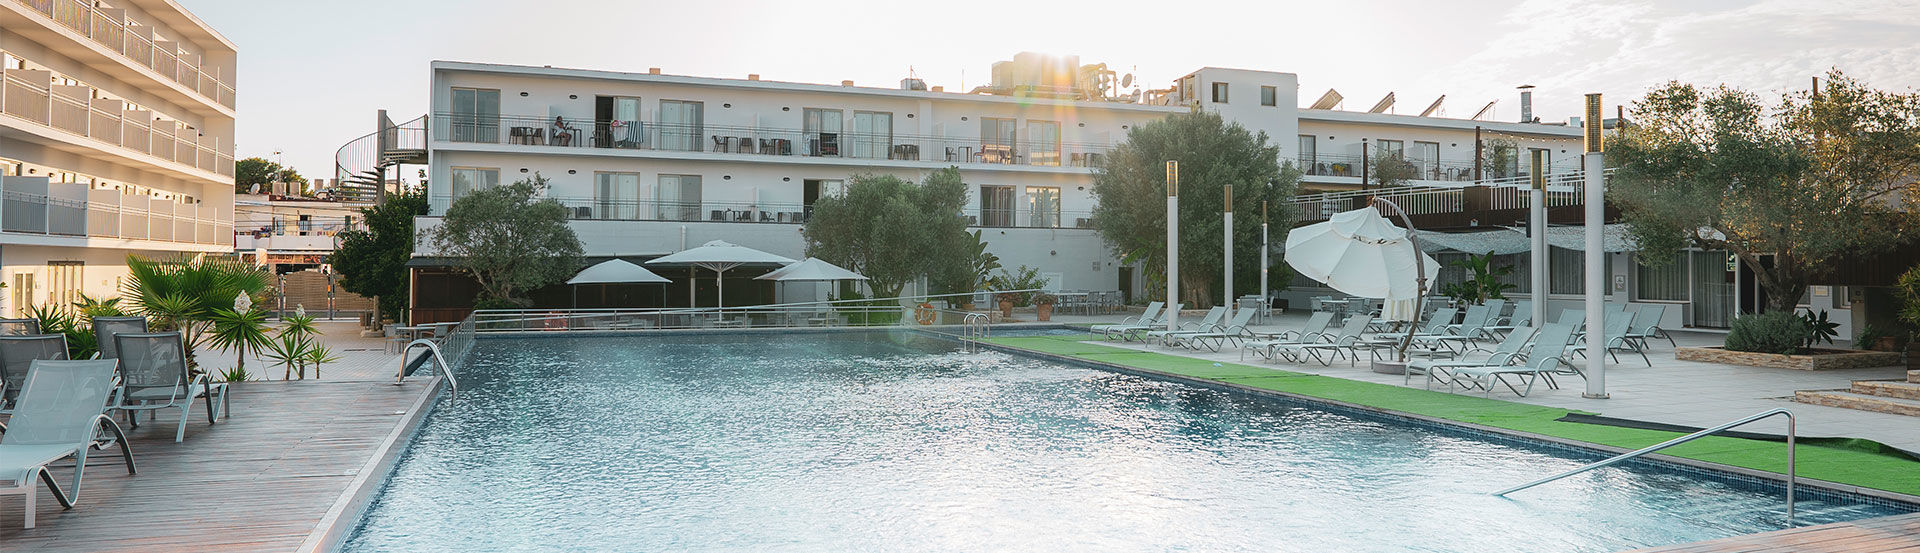 HOTELES - Hoteles en Ibiza